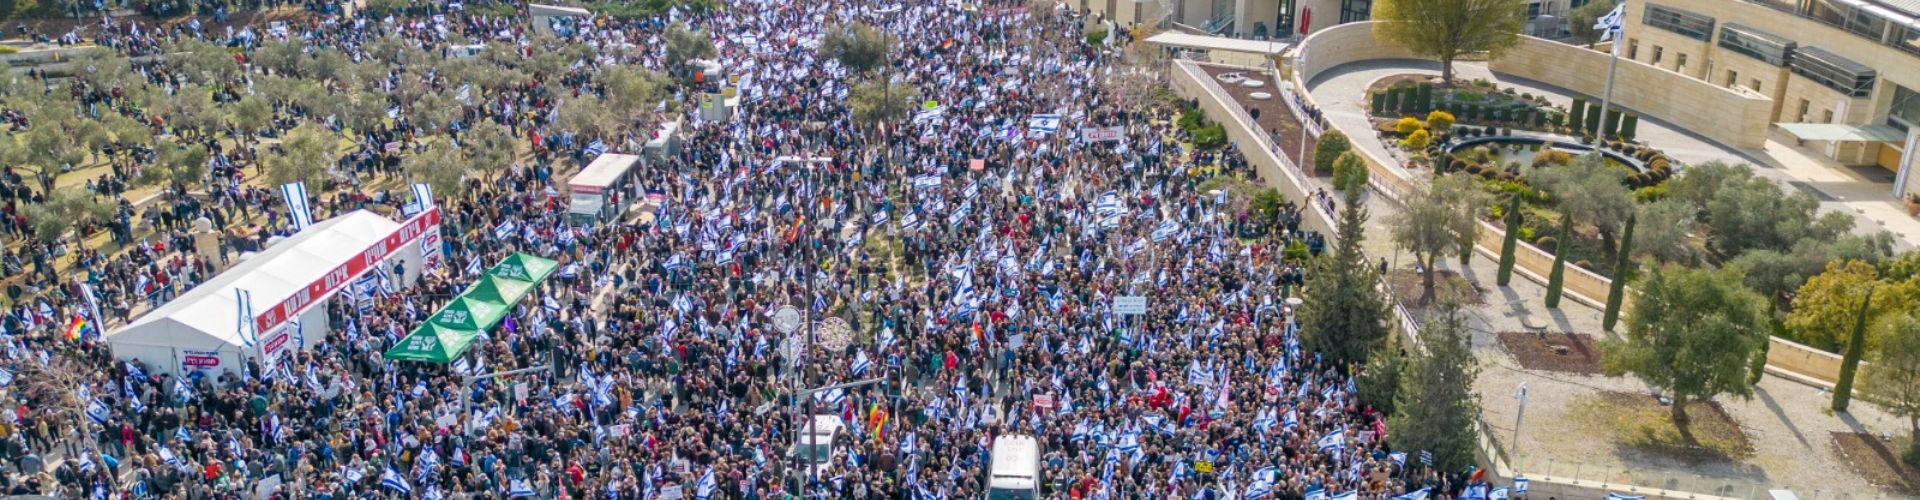 הפגנה בירושלים בעד הדמוקרטיה נגד המהפכה המשטרית